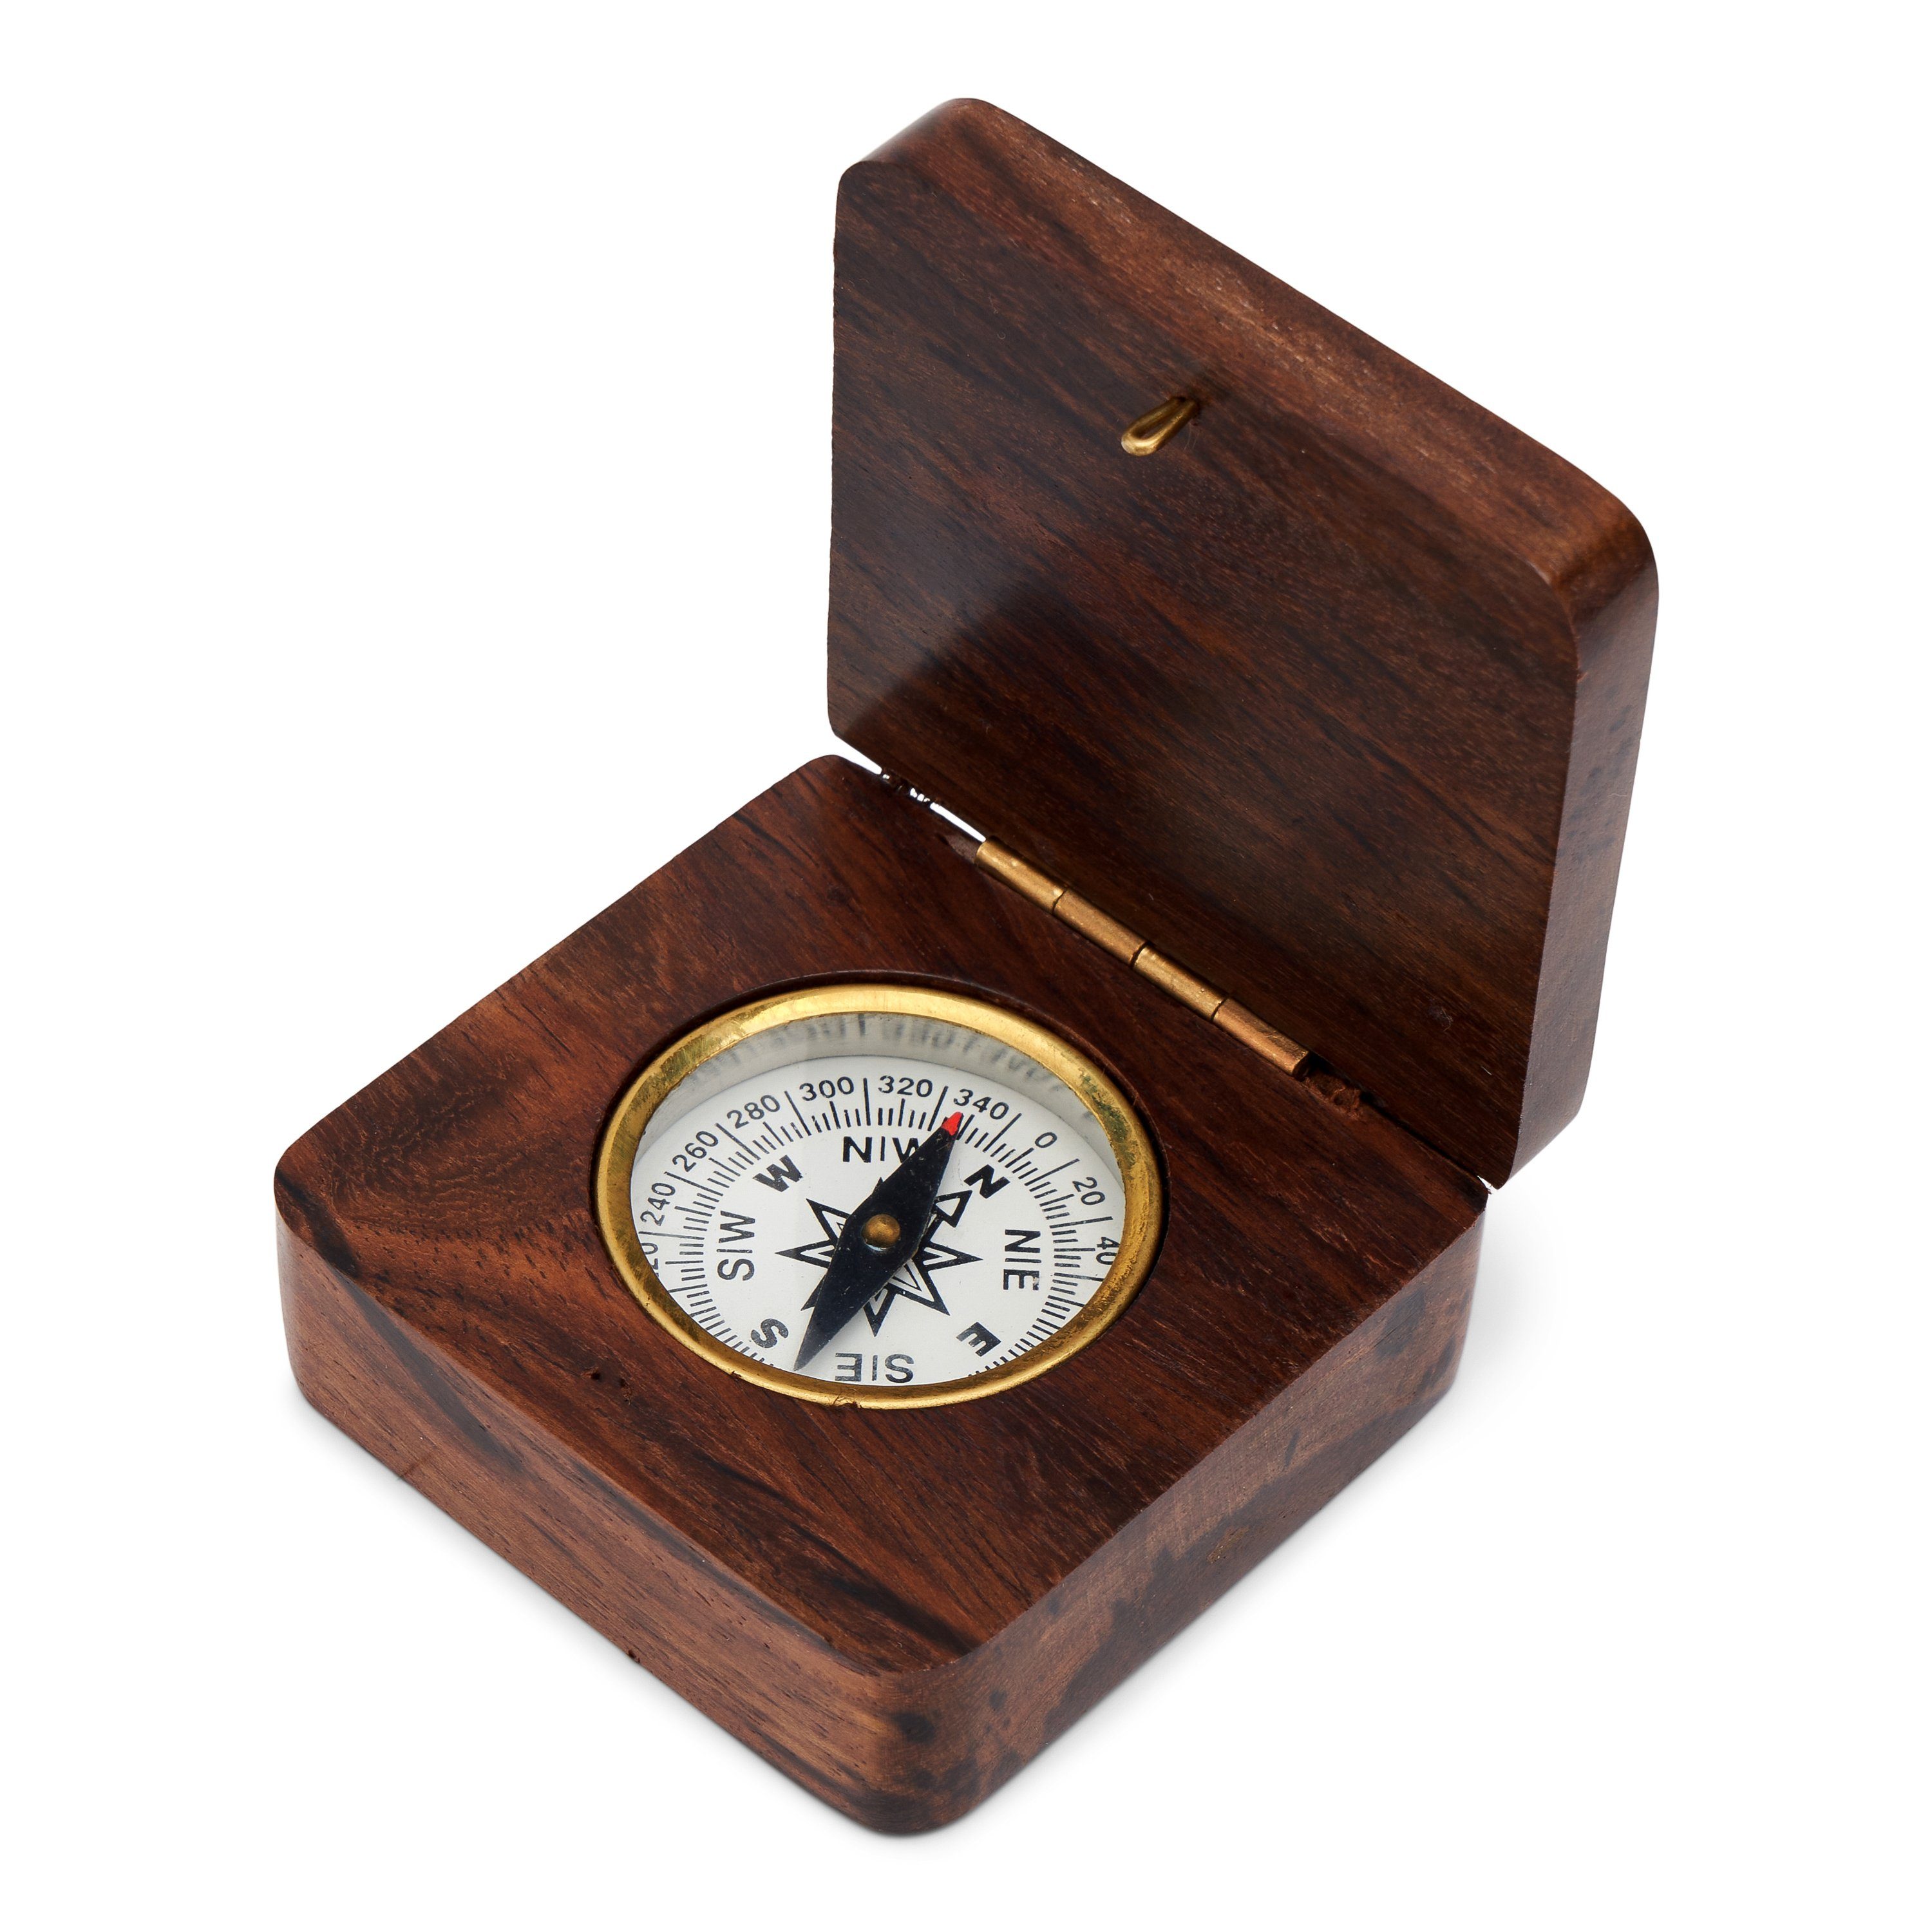 6,5x6,5cm in maritimes NKlaus Navigationsgerät Deko Peilkompass Nautische Kompass (Holz) Holzklappbox Maritimes